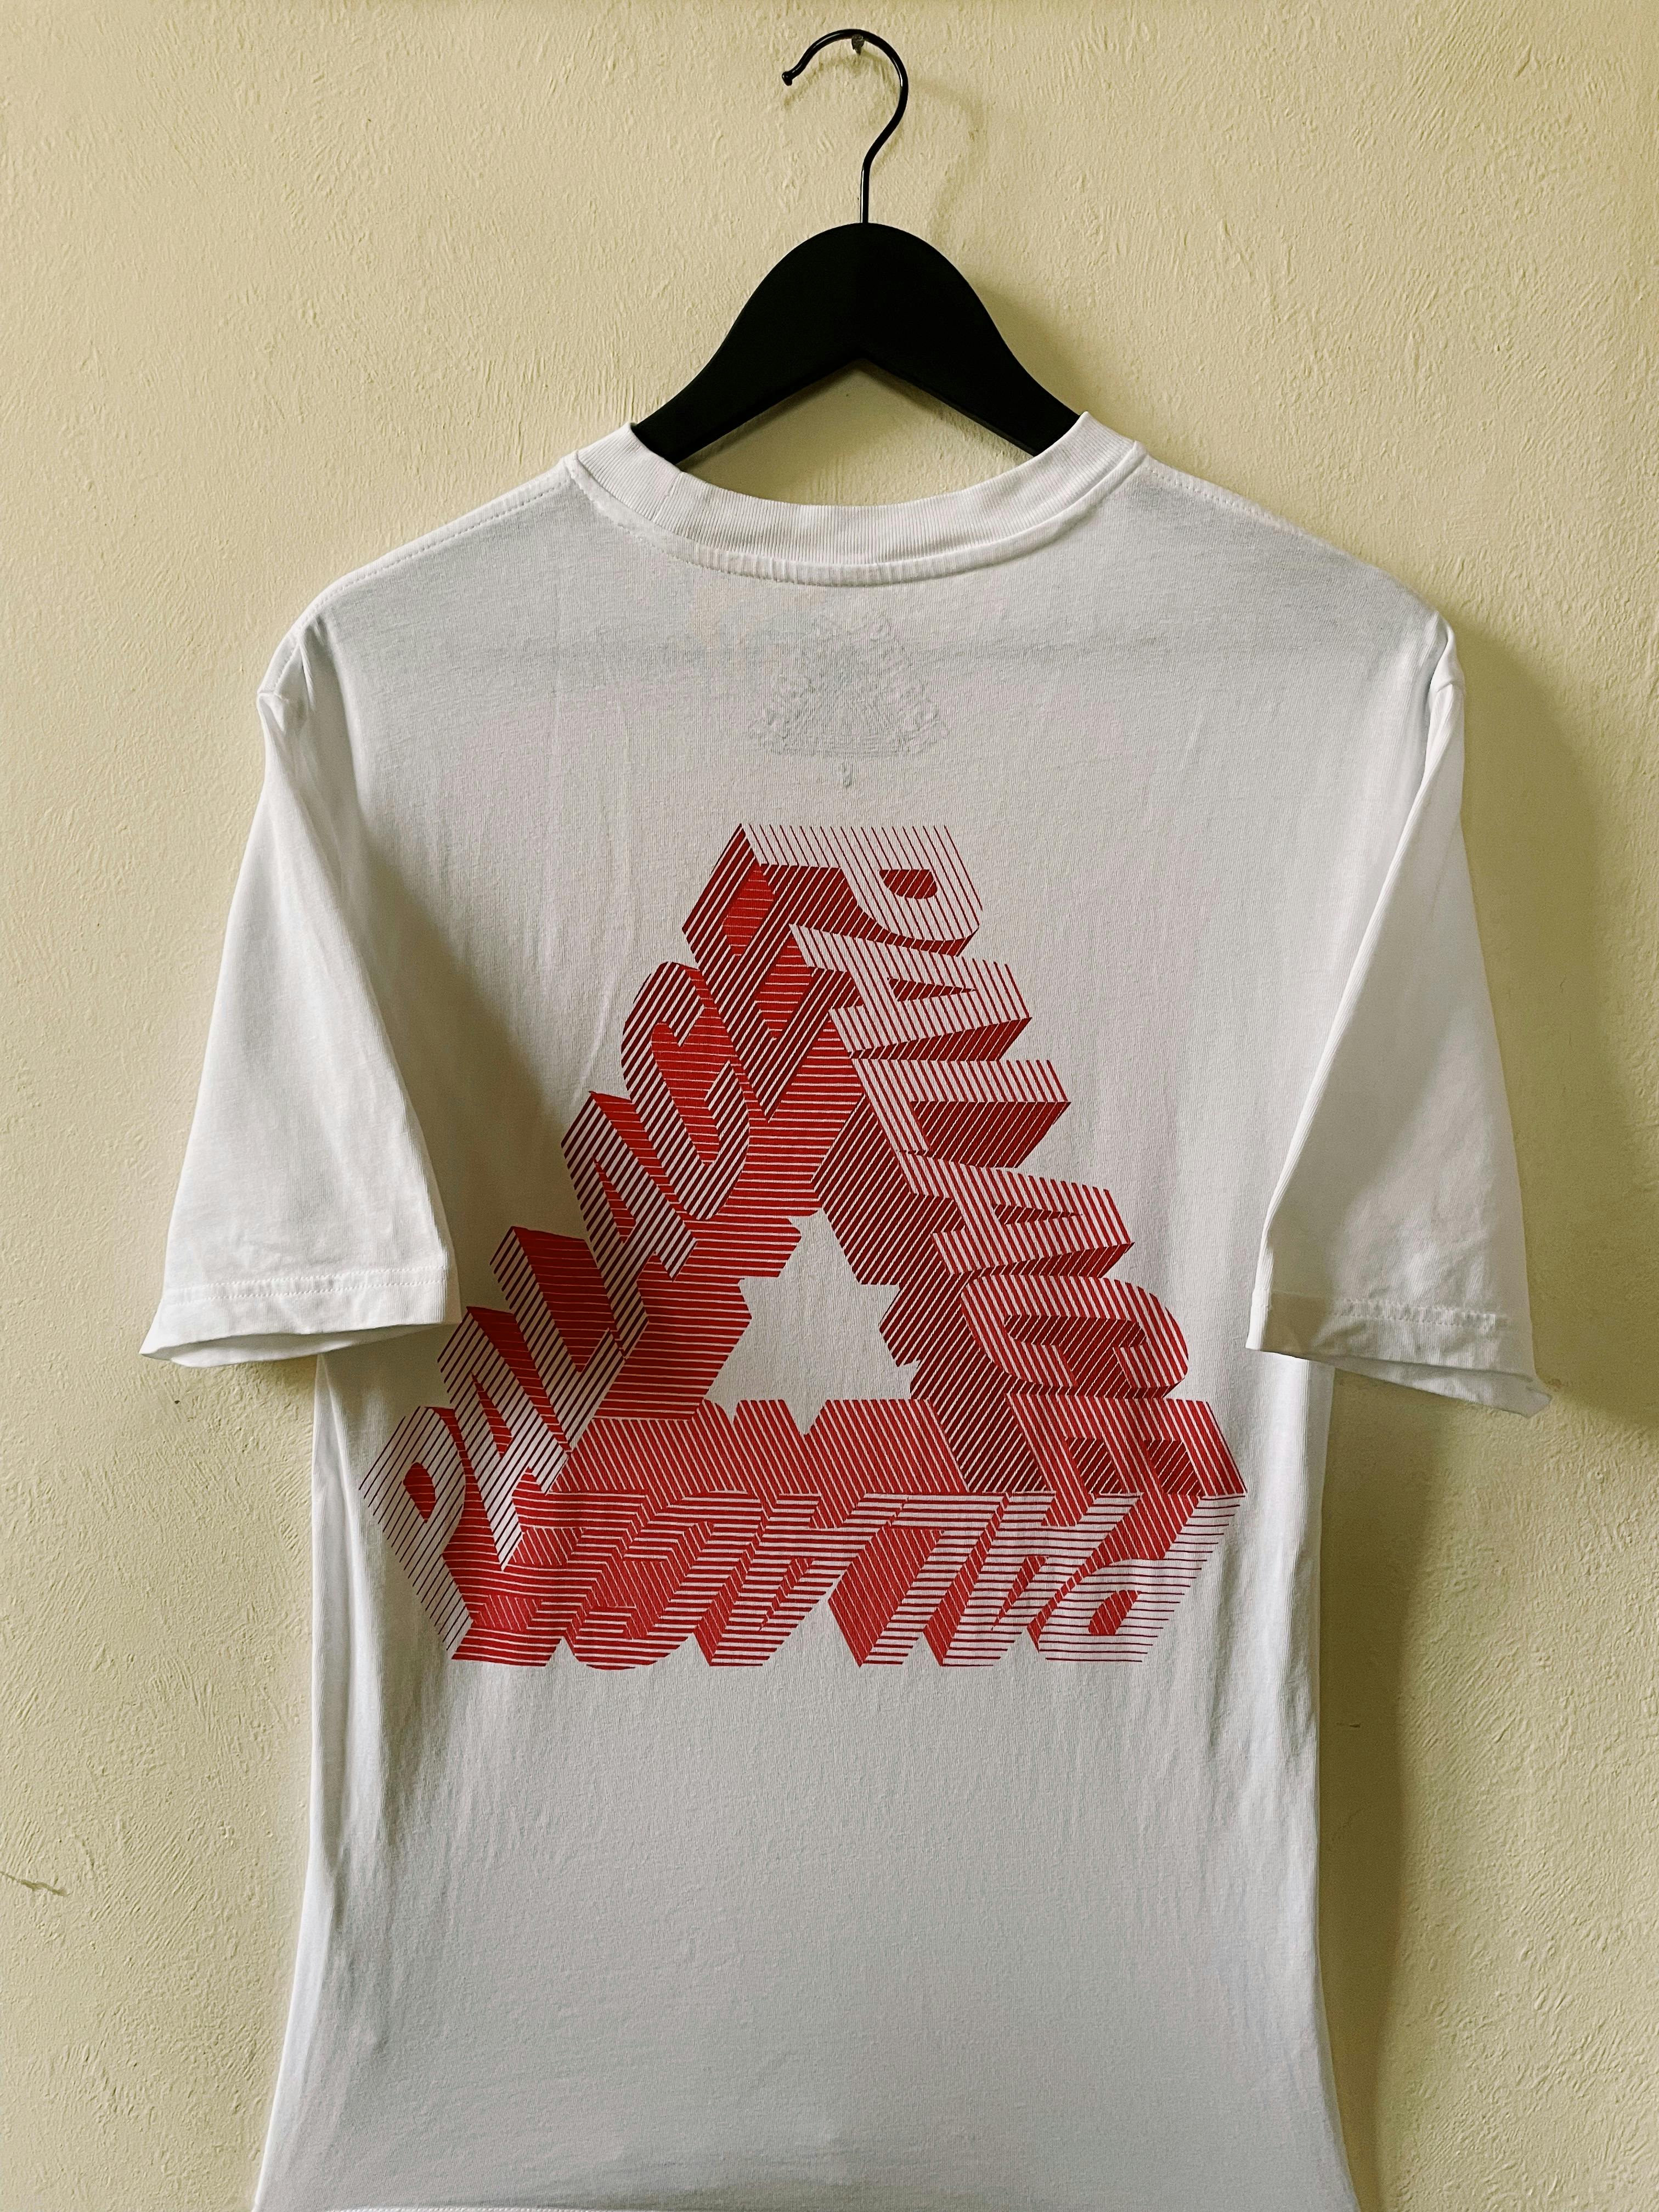 Palace P-3D Tri-Ferg T-shirt White - 1